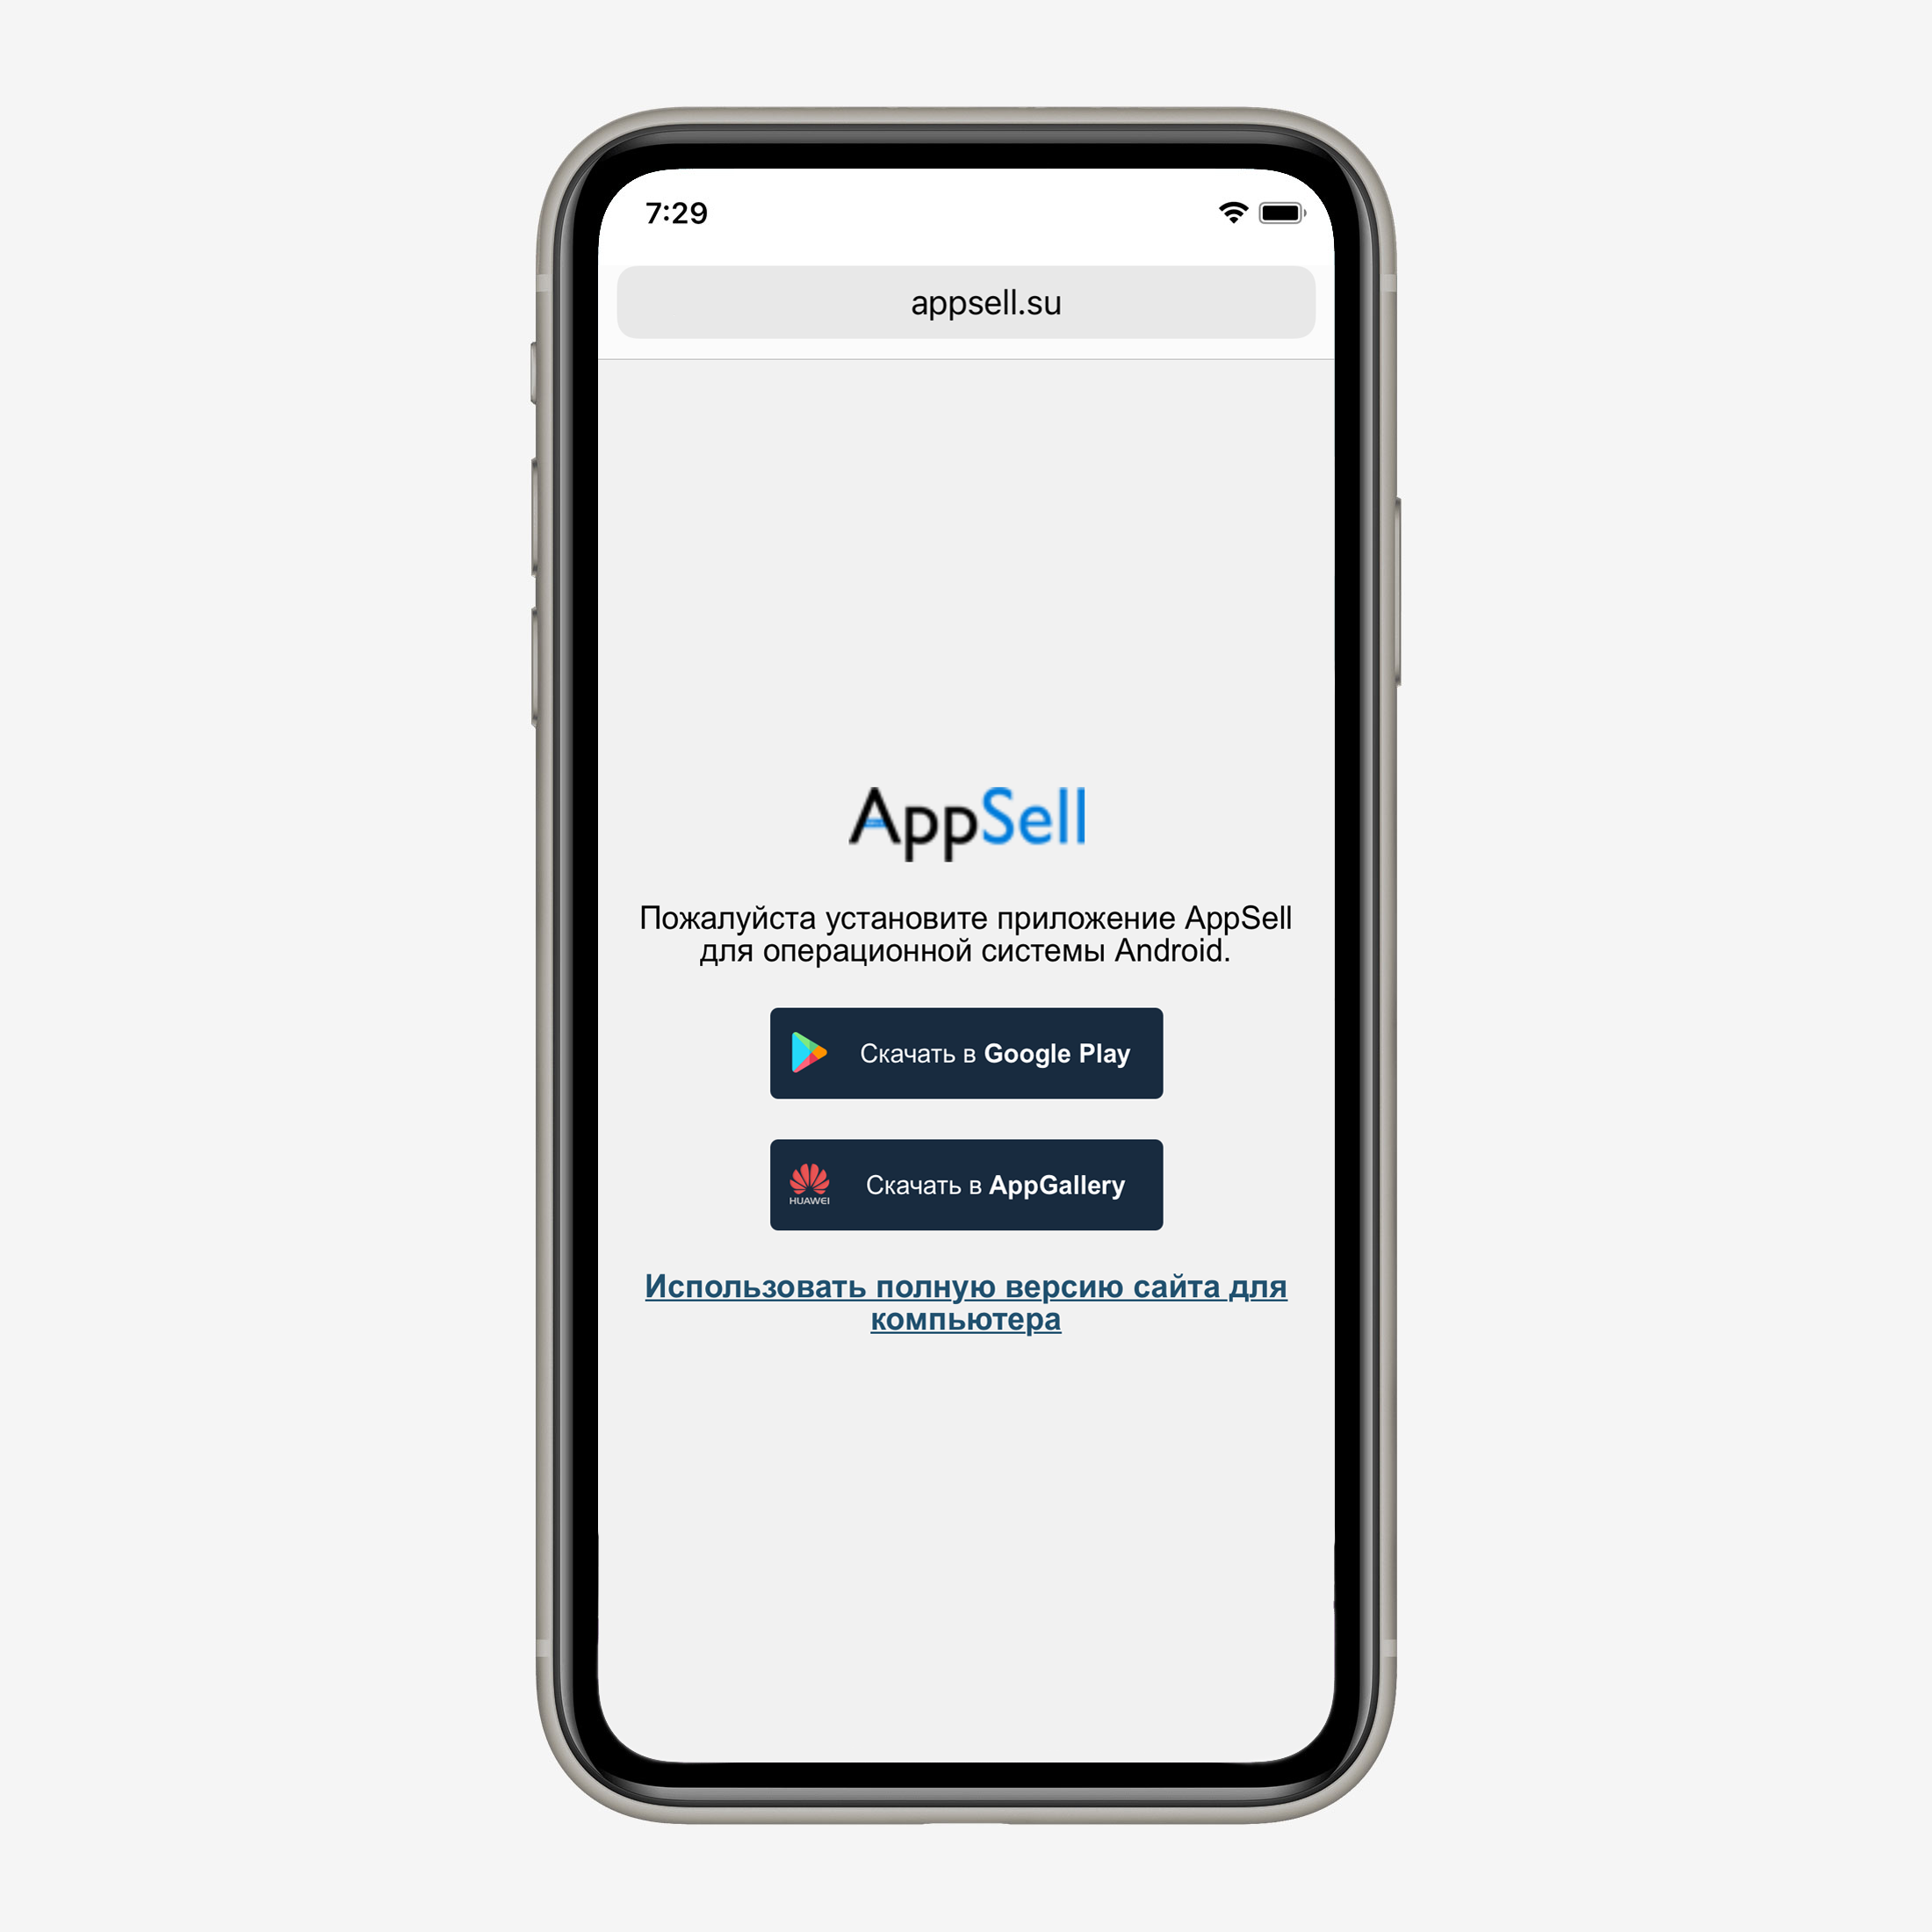 Сообщение с просьбой скачать приложение AppSell